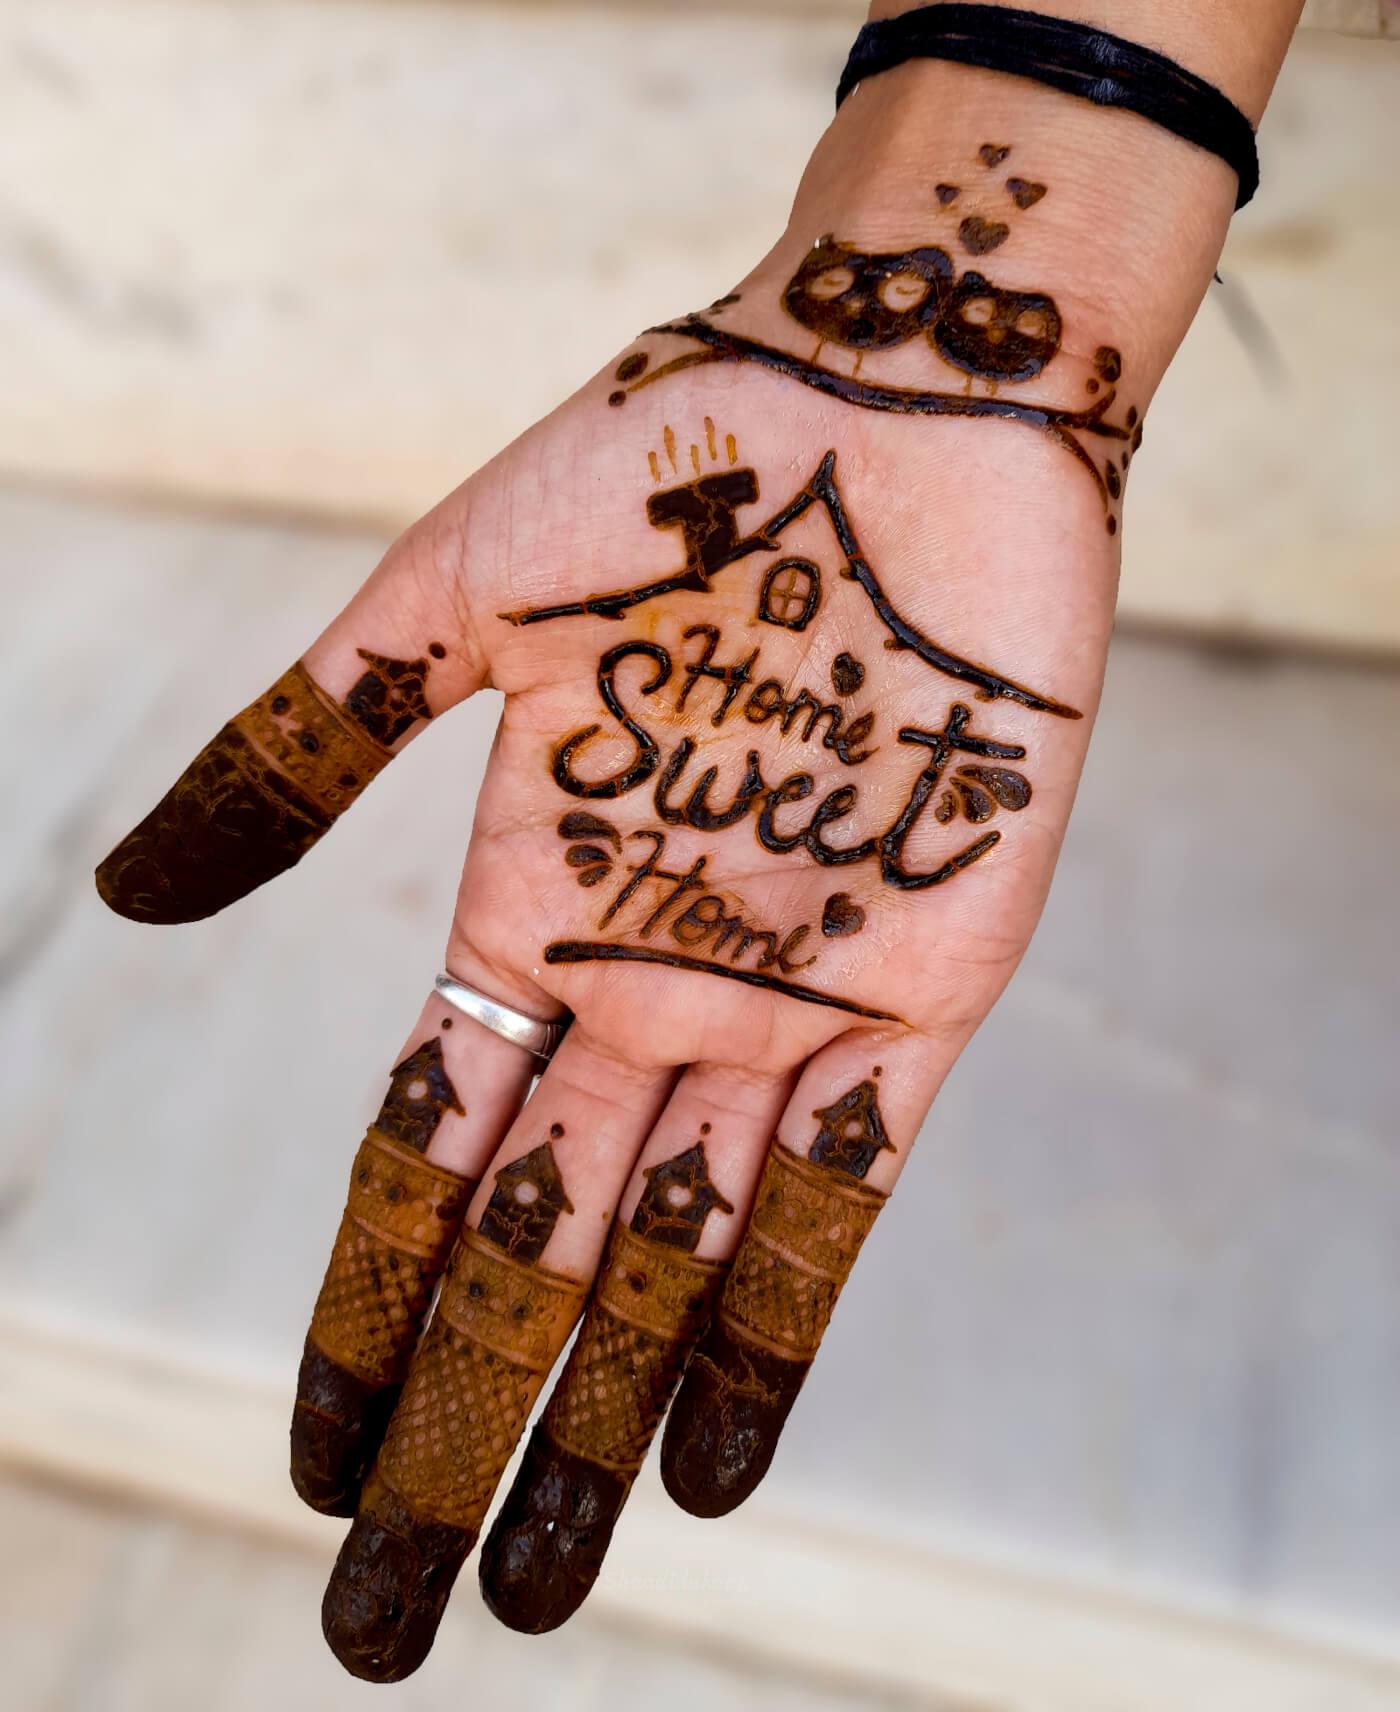 تعليم طريقة نقش تاج الملكة بالحناء السوداء how to make queen crown tatto  with henna henna tattoo mp3